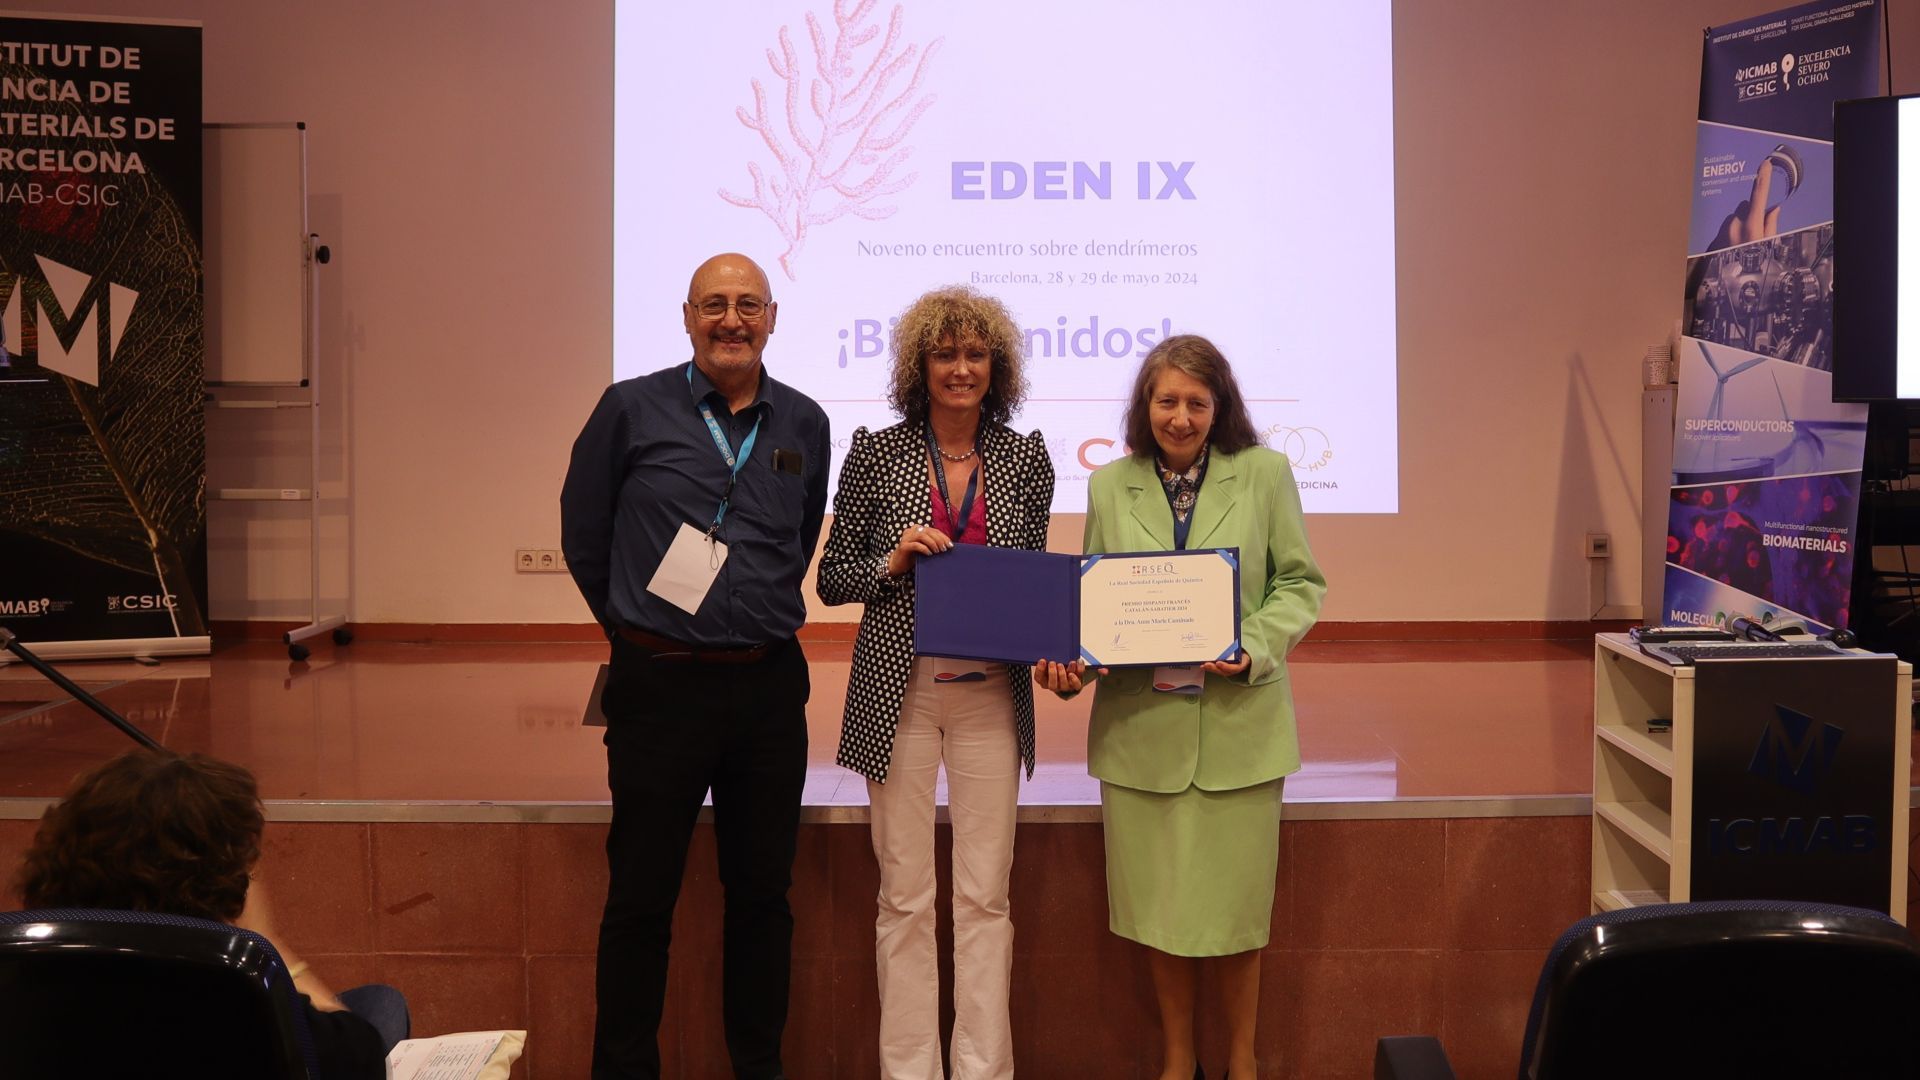                                                                       Entrega del Premio Catalán-Sabatier en la inauguración del IX Encuentro sobre Dendrímeros                                                                                                                                                                                                                                                                                                                                                                                                                                                                                                                                                                                                                                                 